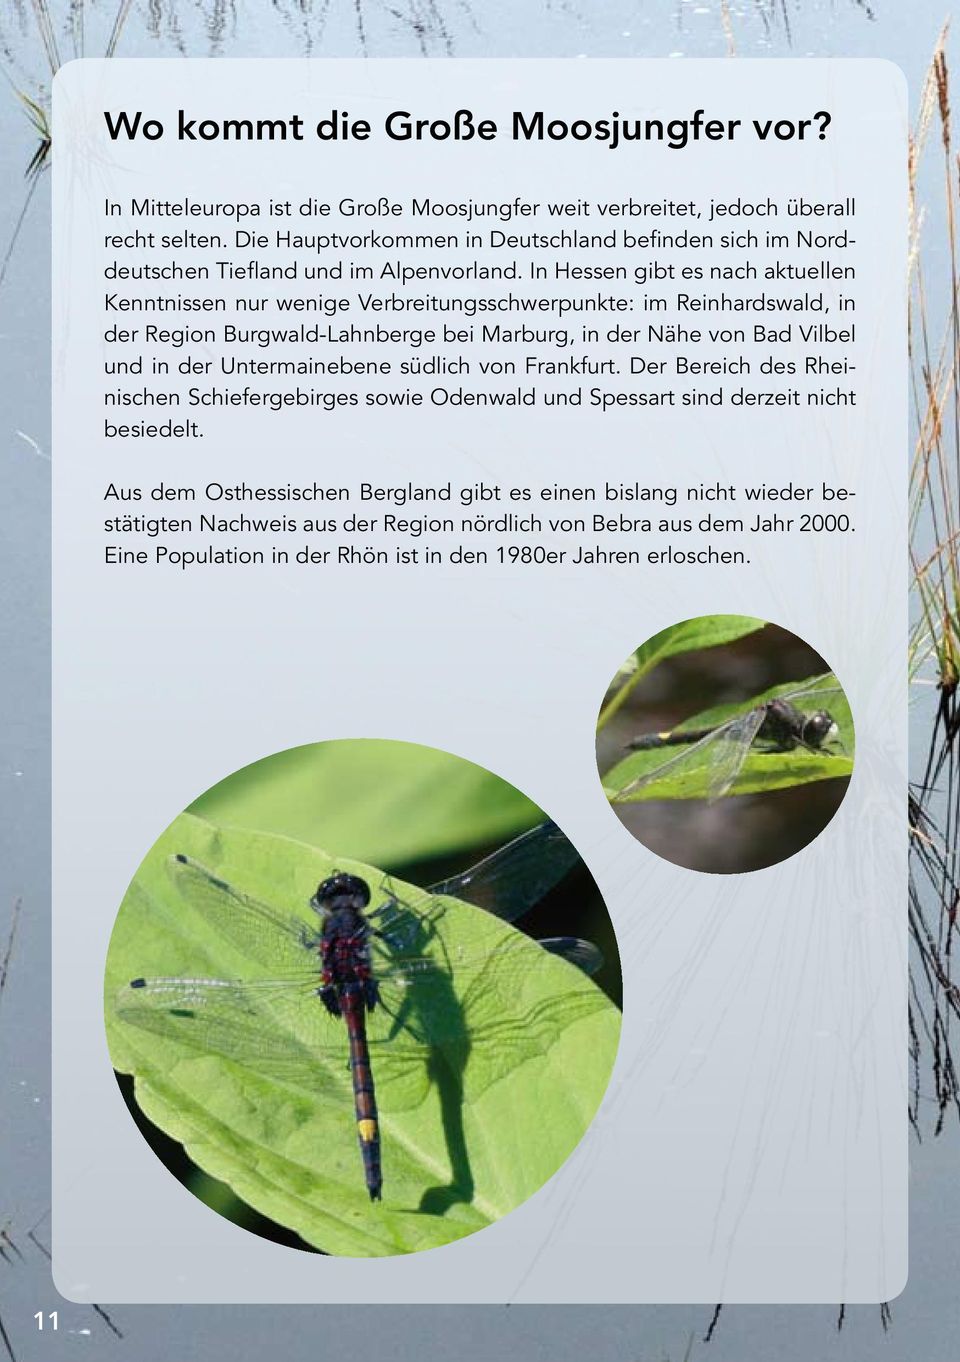 In Hessen gibt es nach aktuellen Kenntnissen nur wenige Verbreitungsschwer punkte: im Reinhardswald, in der Region Burgwald-Lahnberge bei Marburg, in der Nähe von Bad Vilbel und in der